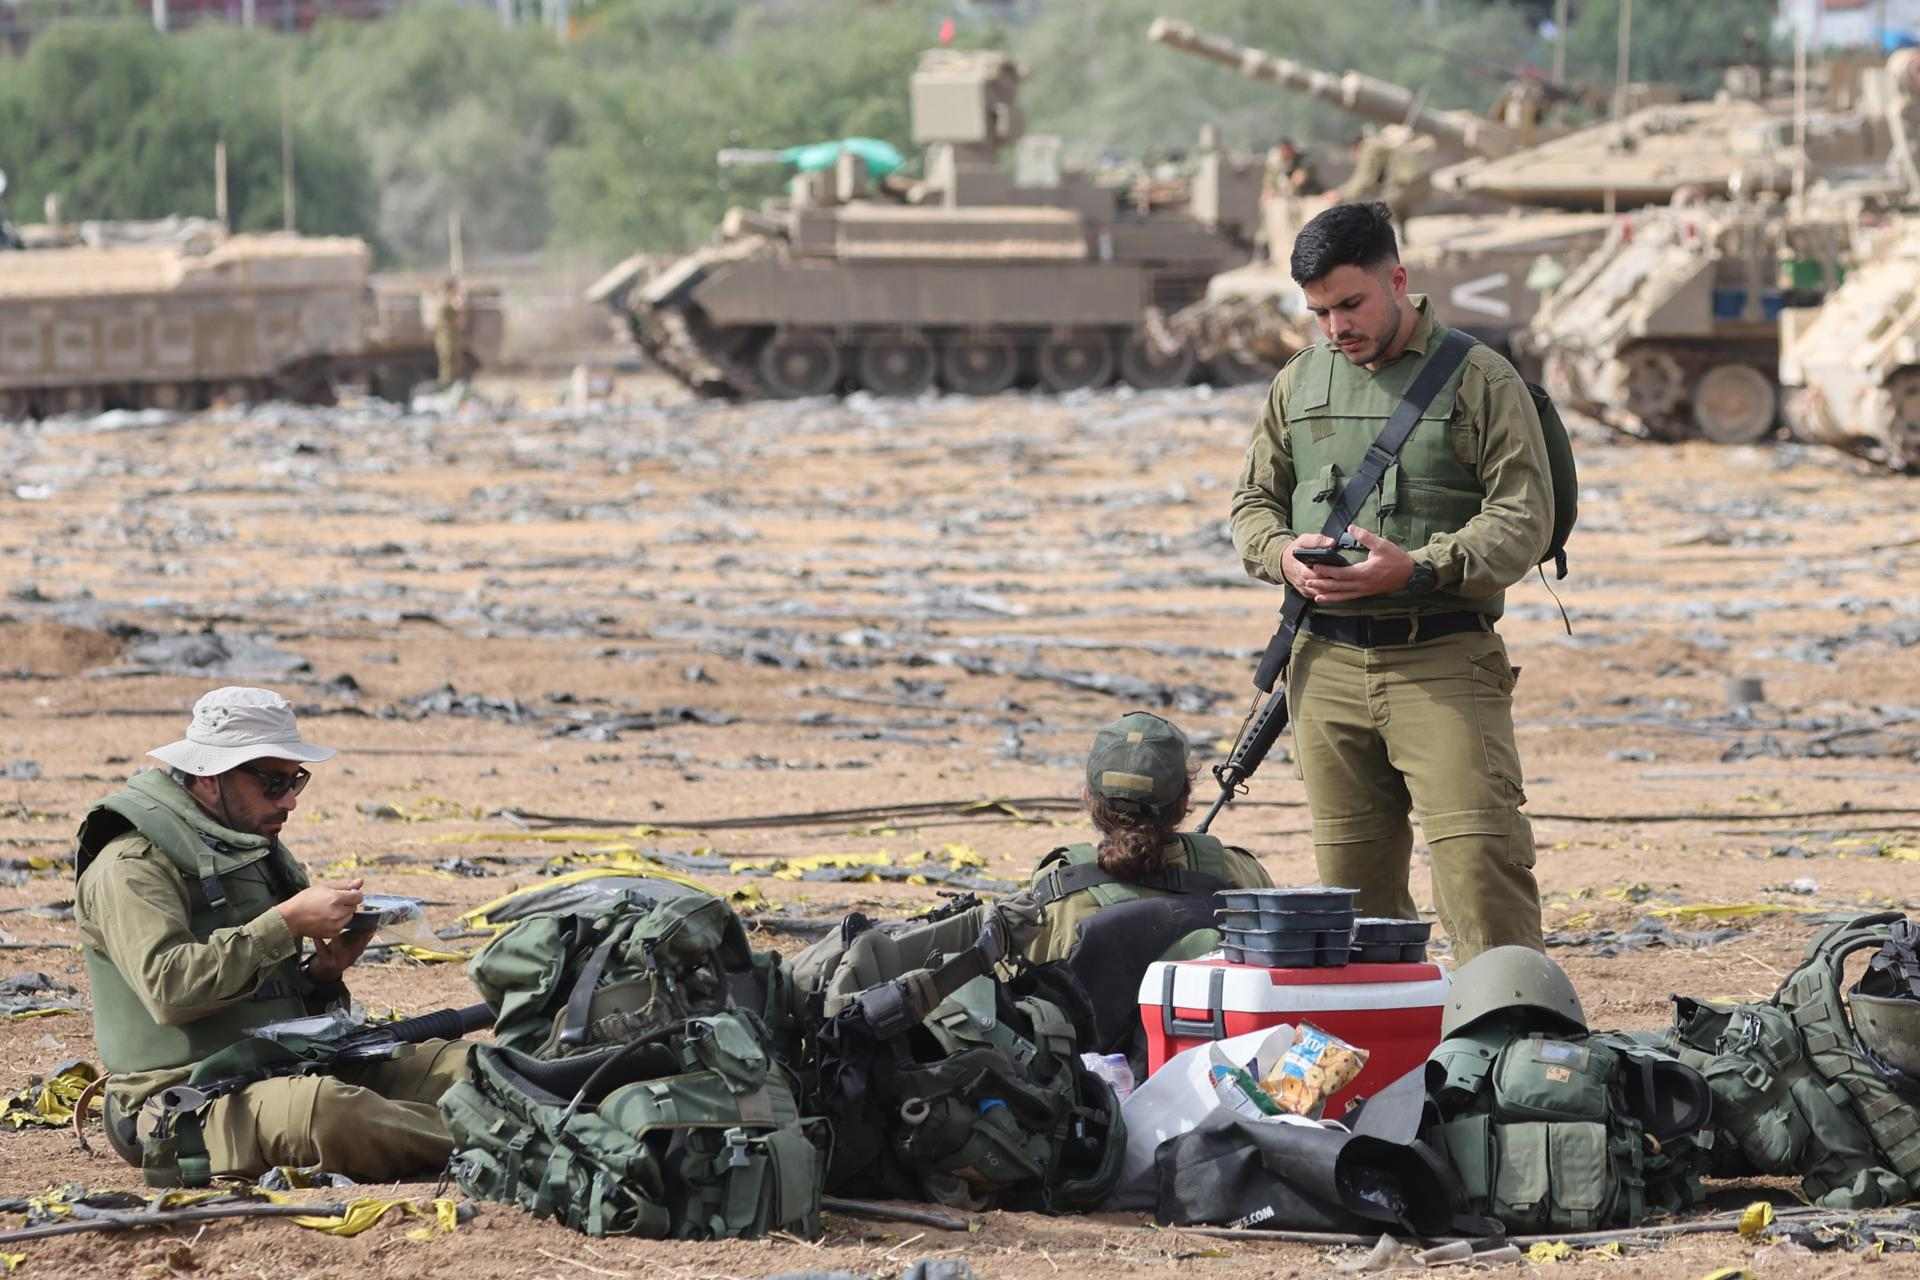 Quan serà l'ofensiva terrestre d'Israel a Gaza? Tot el que en sabem